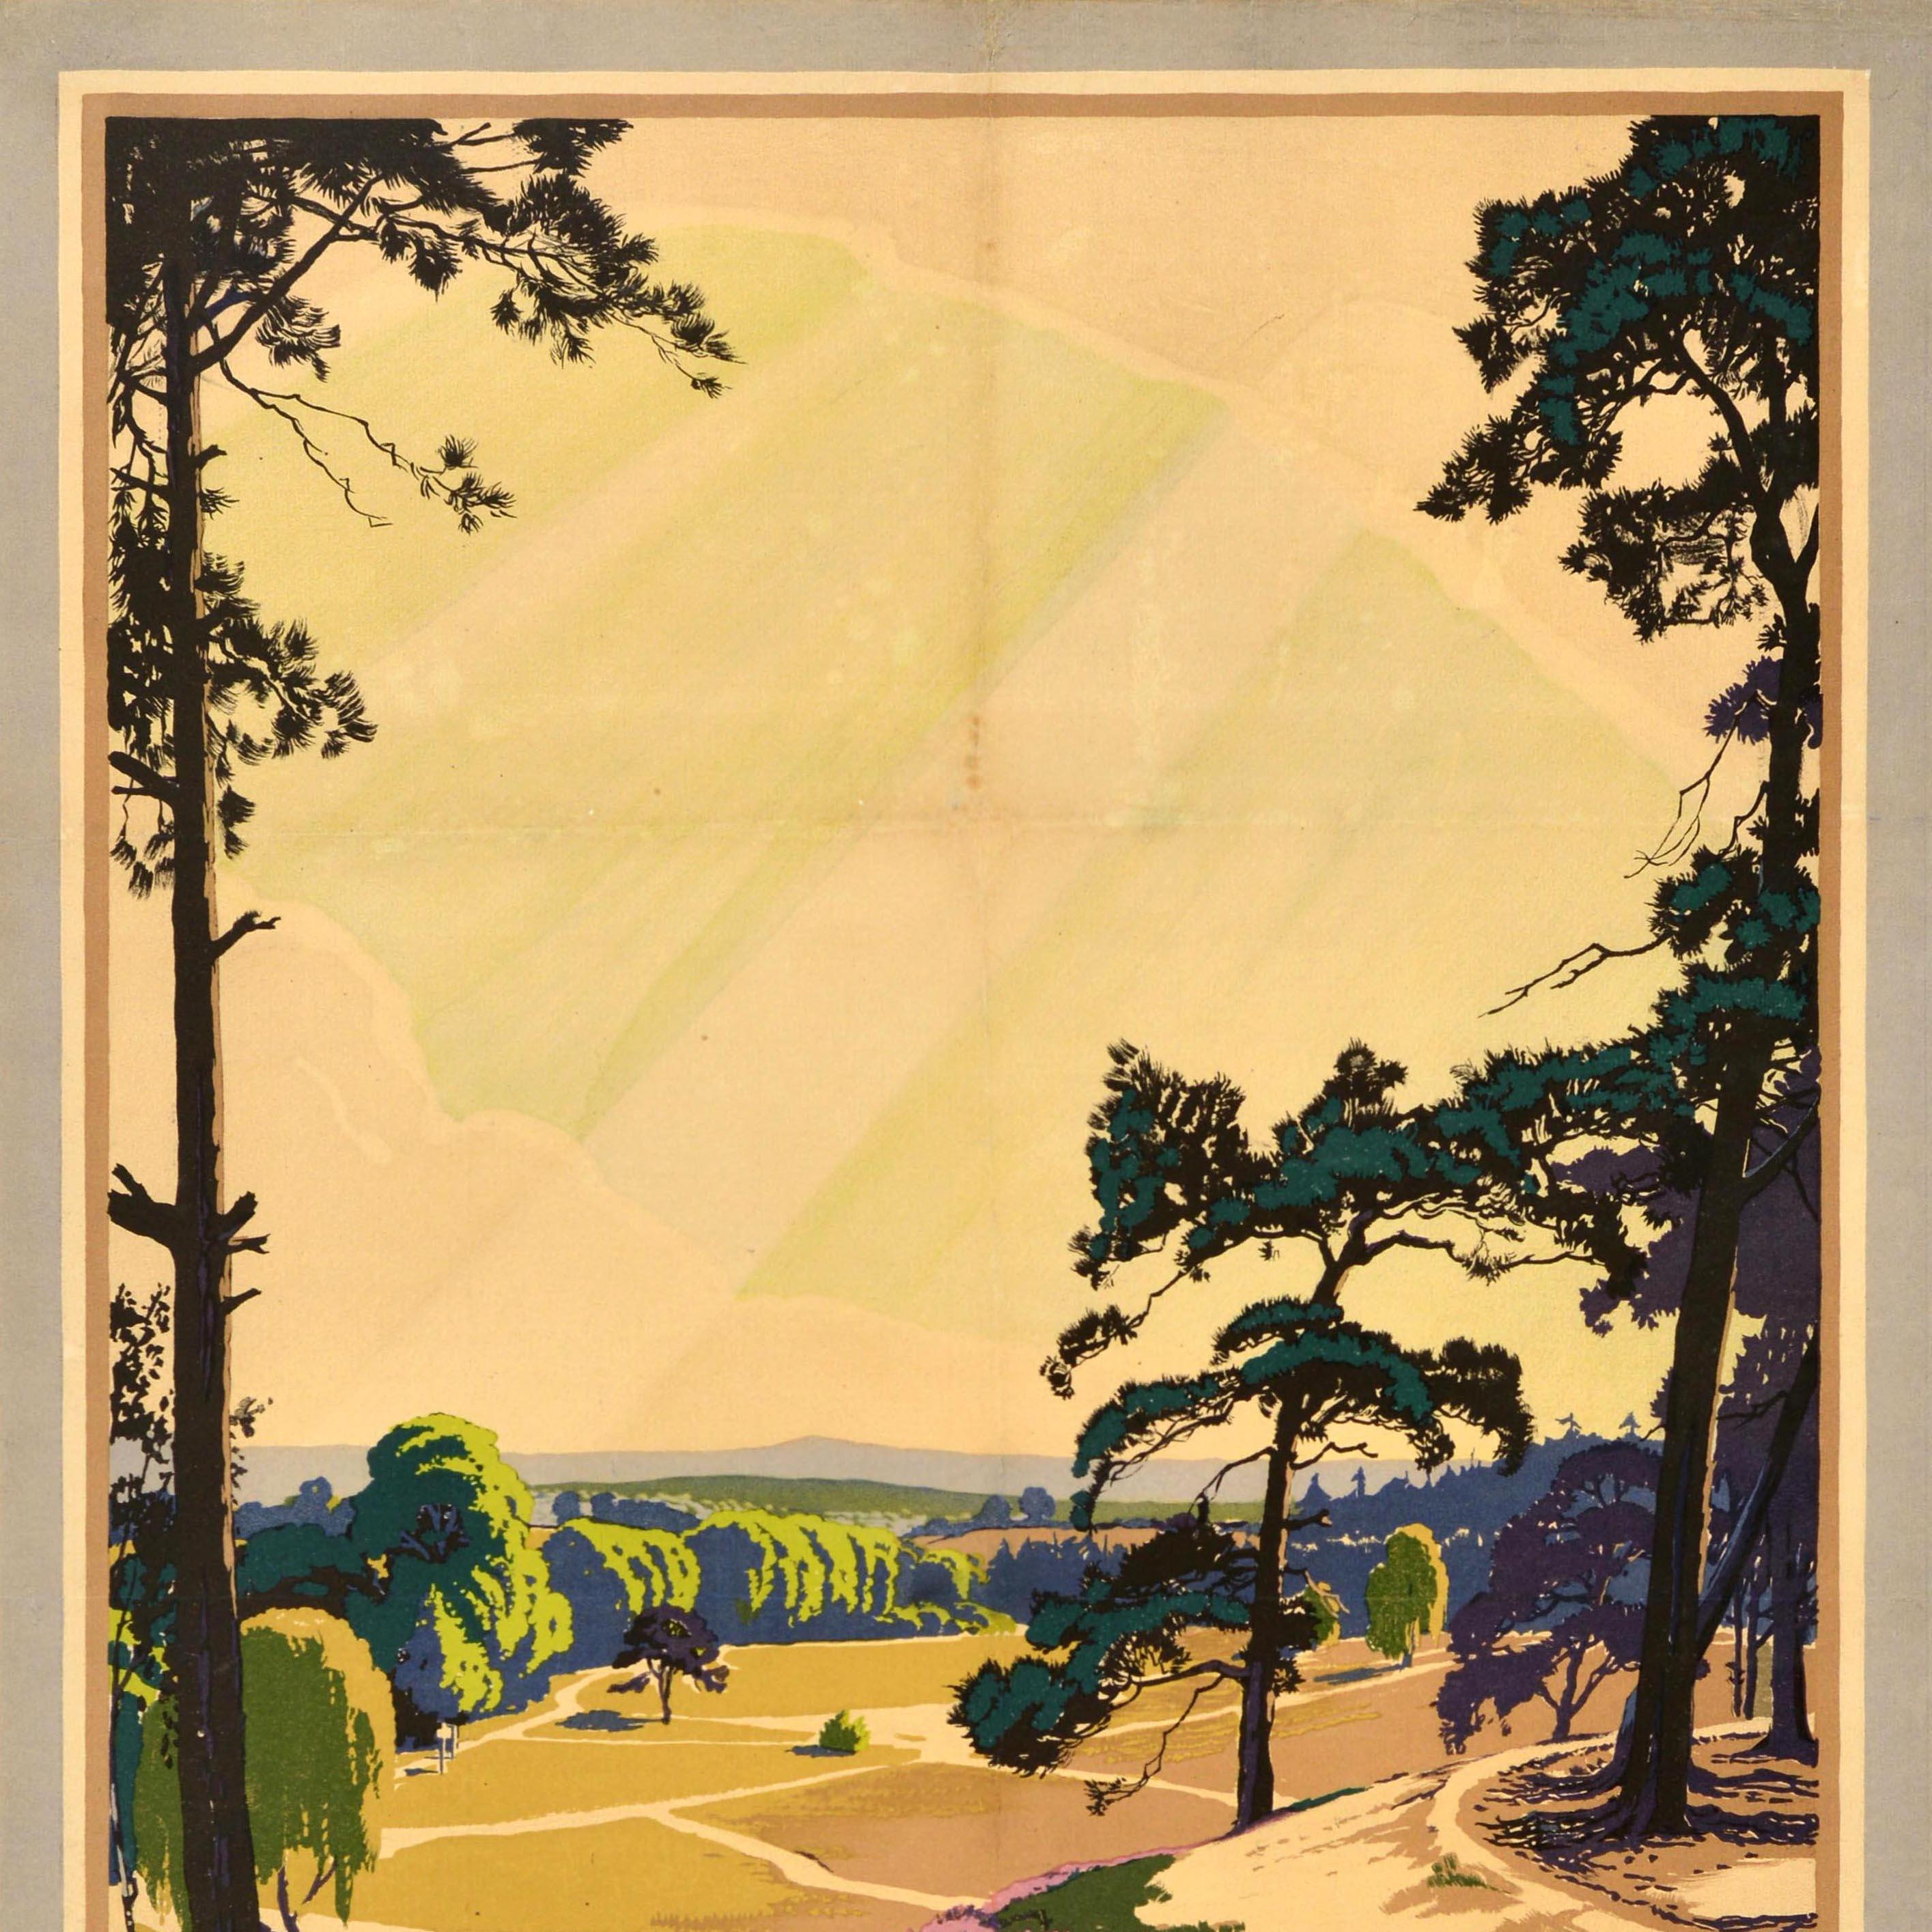 Original Vintage-Reise-Werbeplakat für Southern Electric mit einer malerischen Ansicht von Walter E. Spradbery (1889-1969) einer friedlichen Surrey-Landschaft mit Wegen durch Bäume und Felder, bunten Heideblumen, die auf dem Hügel im Vordergrund